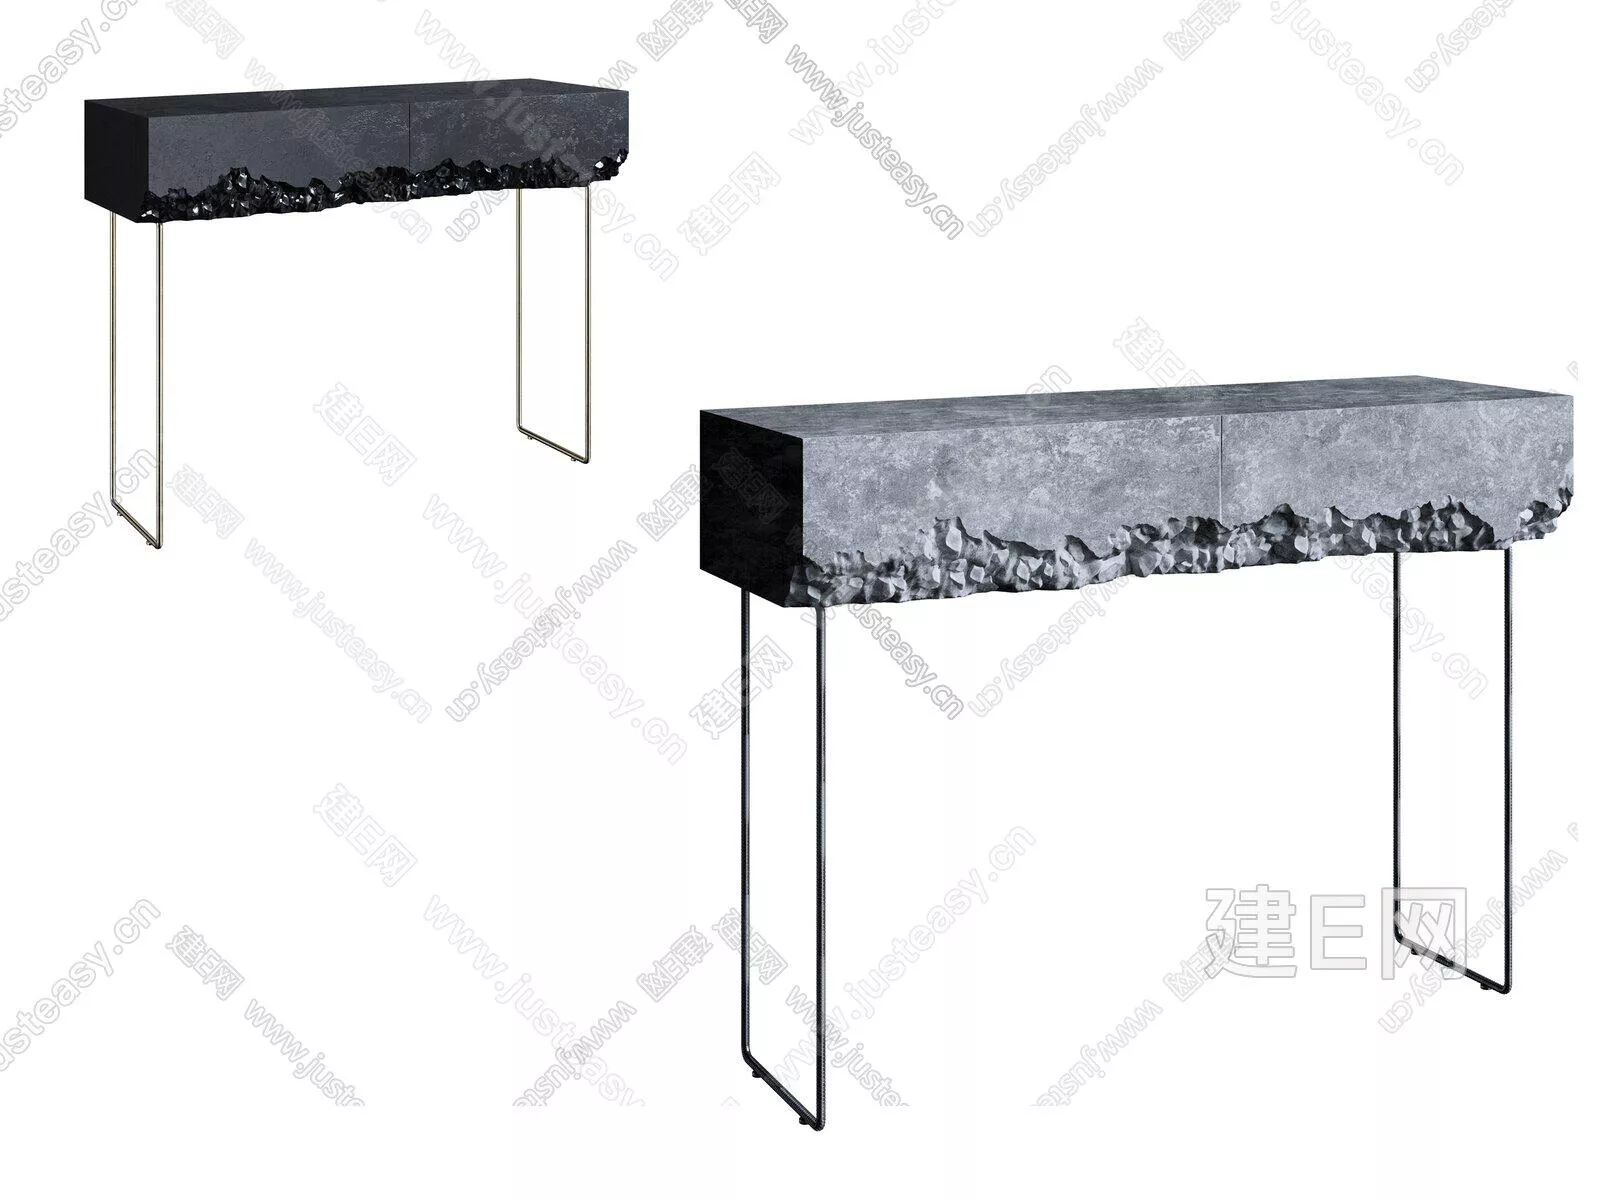 MODERN SIDE TABLE - SKETCHUP 3D MODEL - ENSCAPE - 105269438